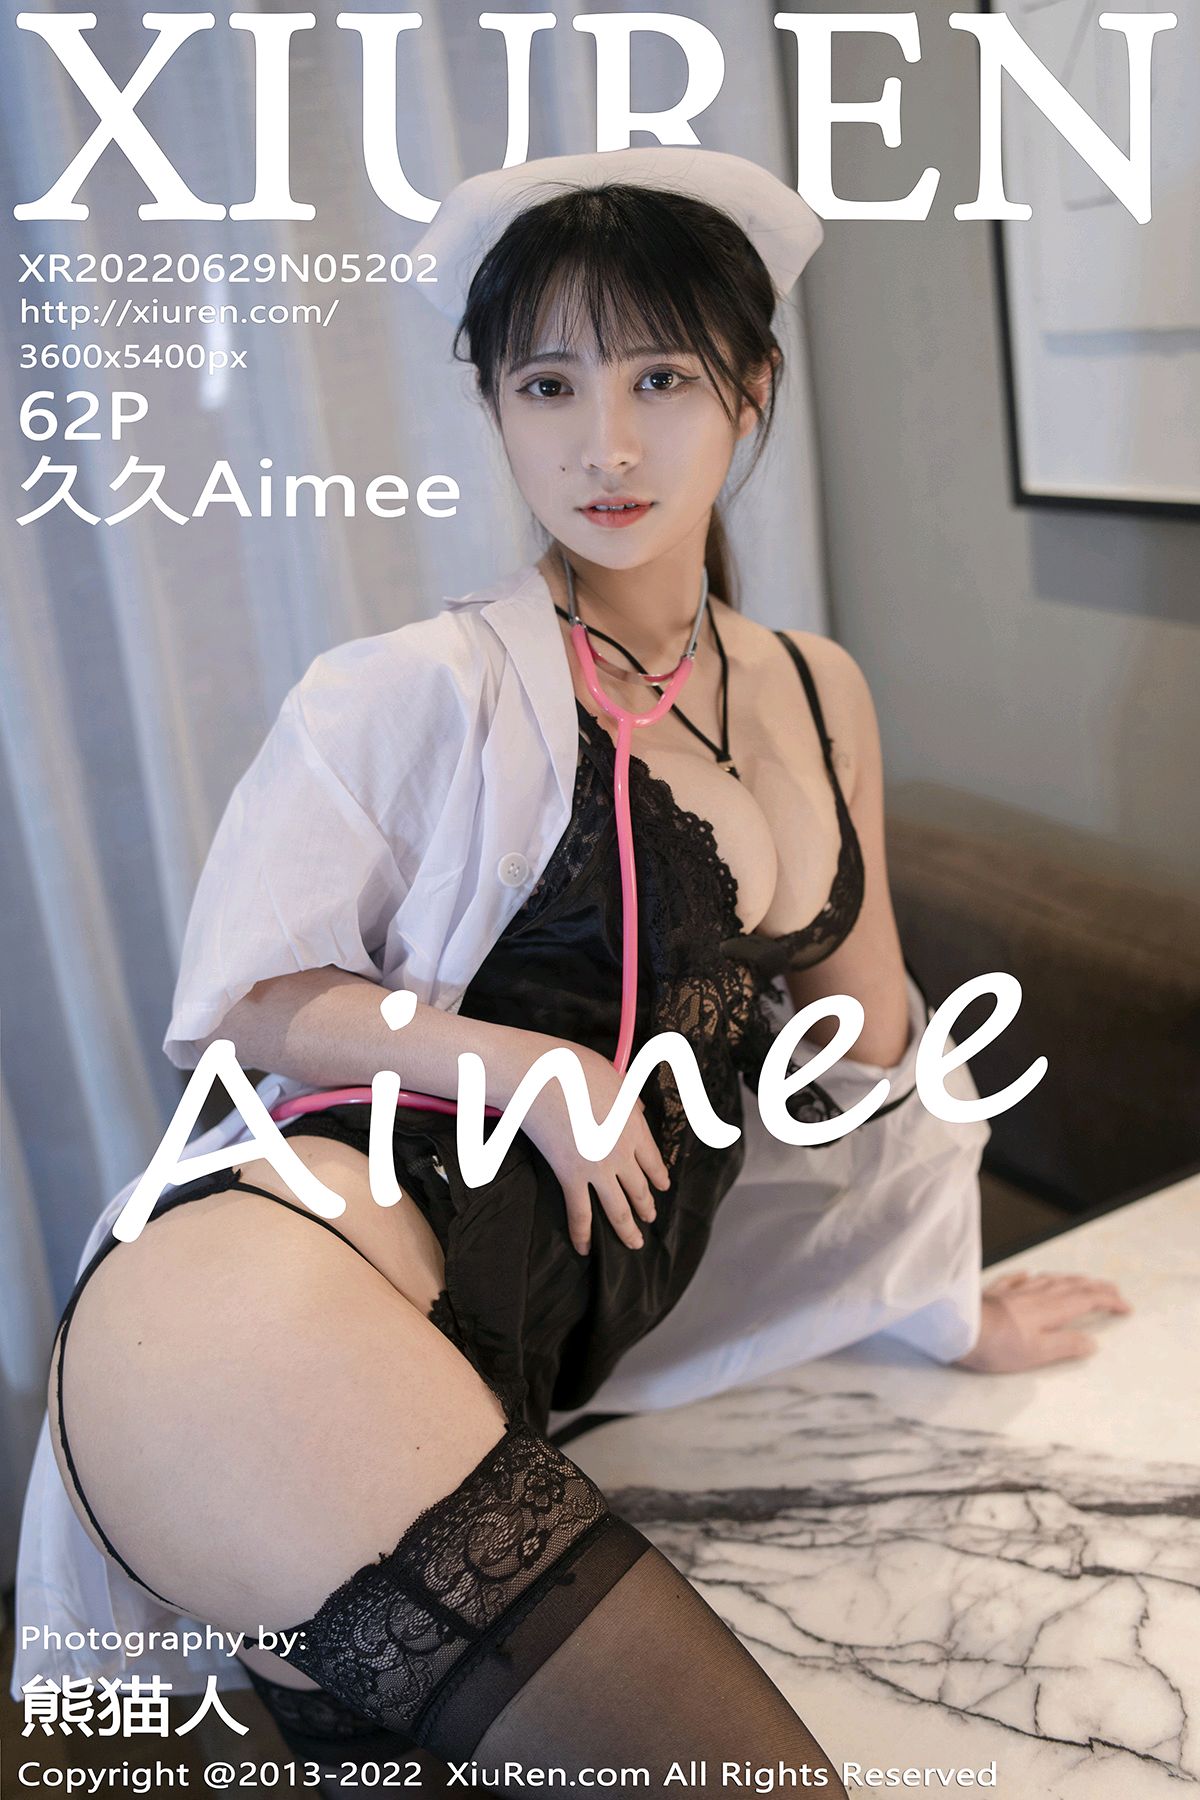 [XiuRen秀人网] 2022.06.29 No.5202 久久Aimee [62+1P]